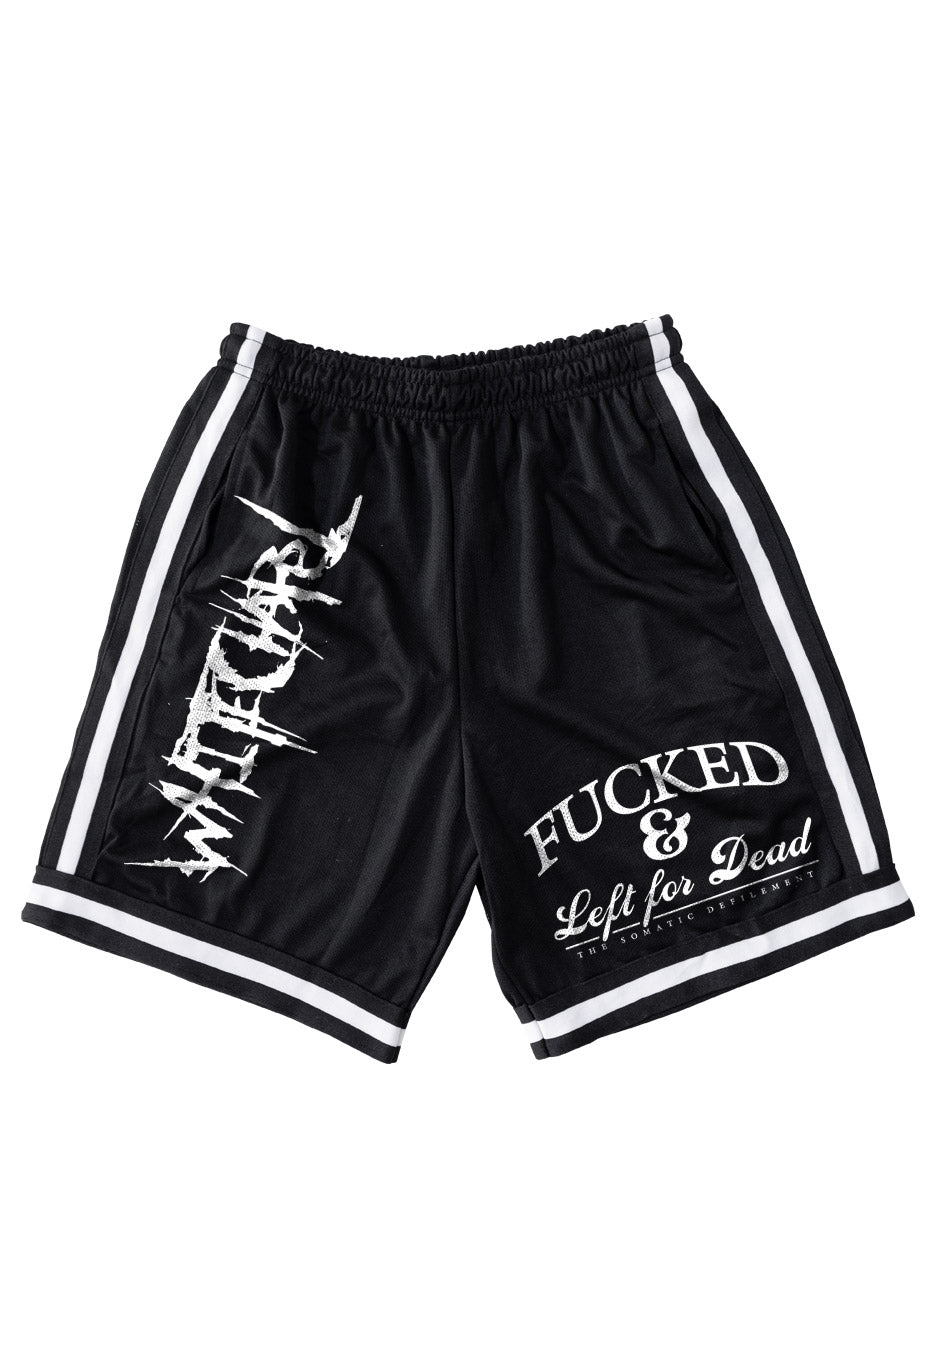 Whitechapel - Fucked Striped - Shorts